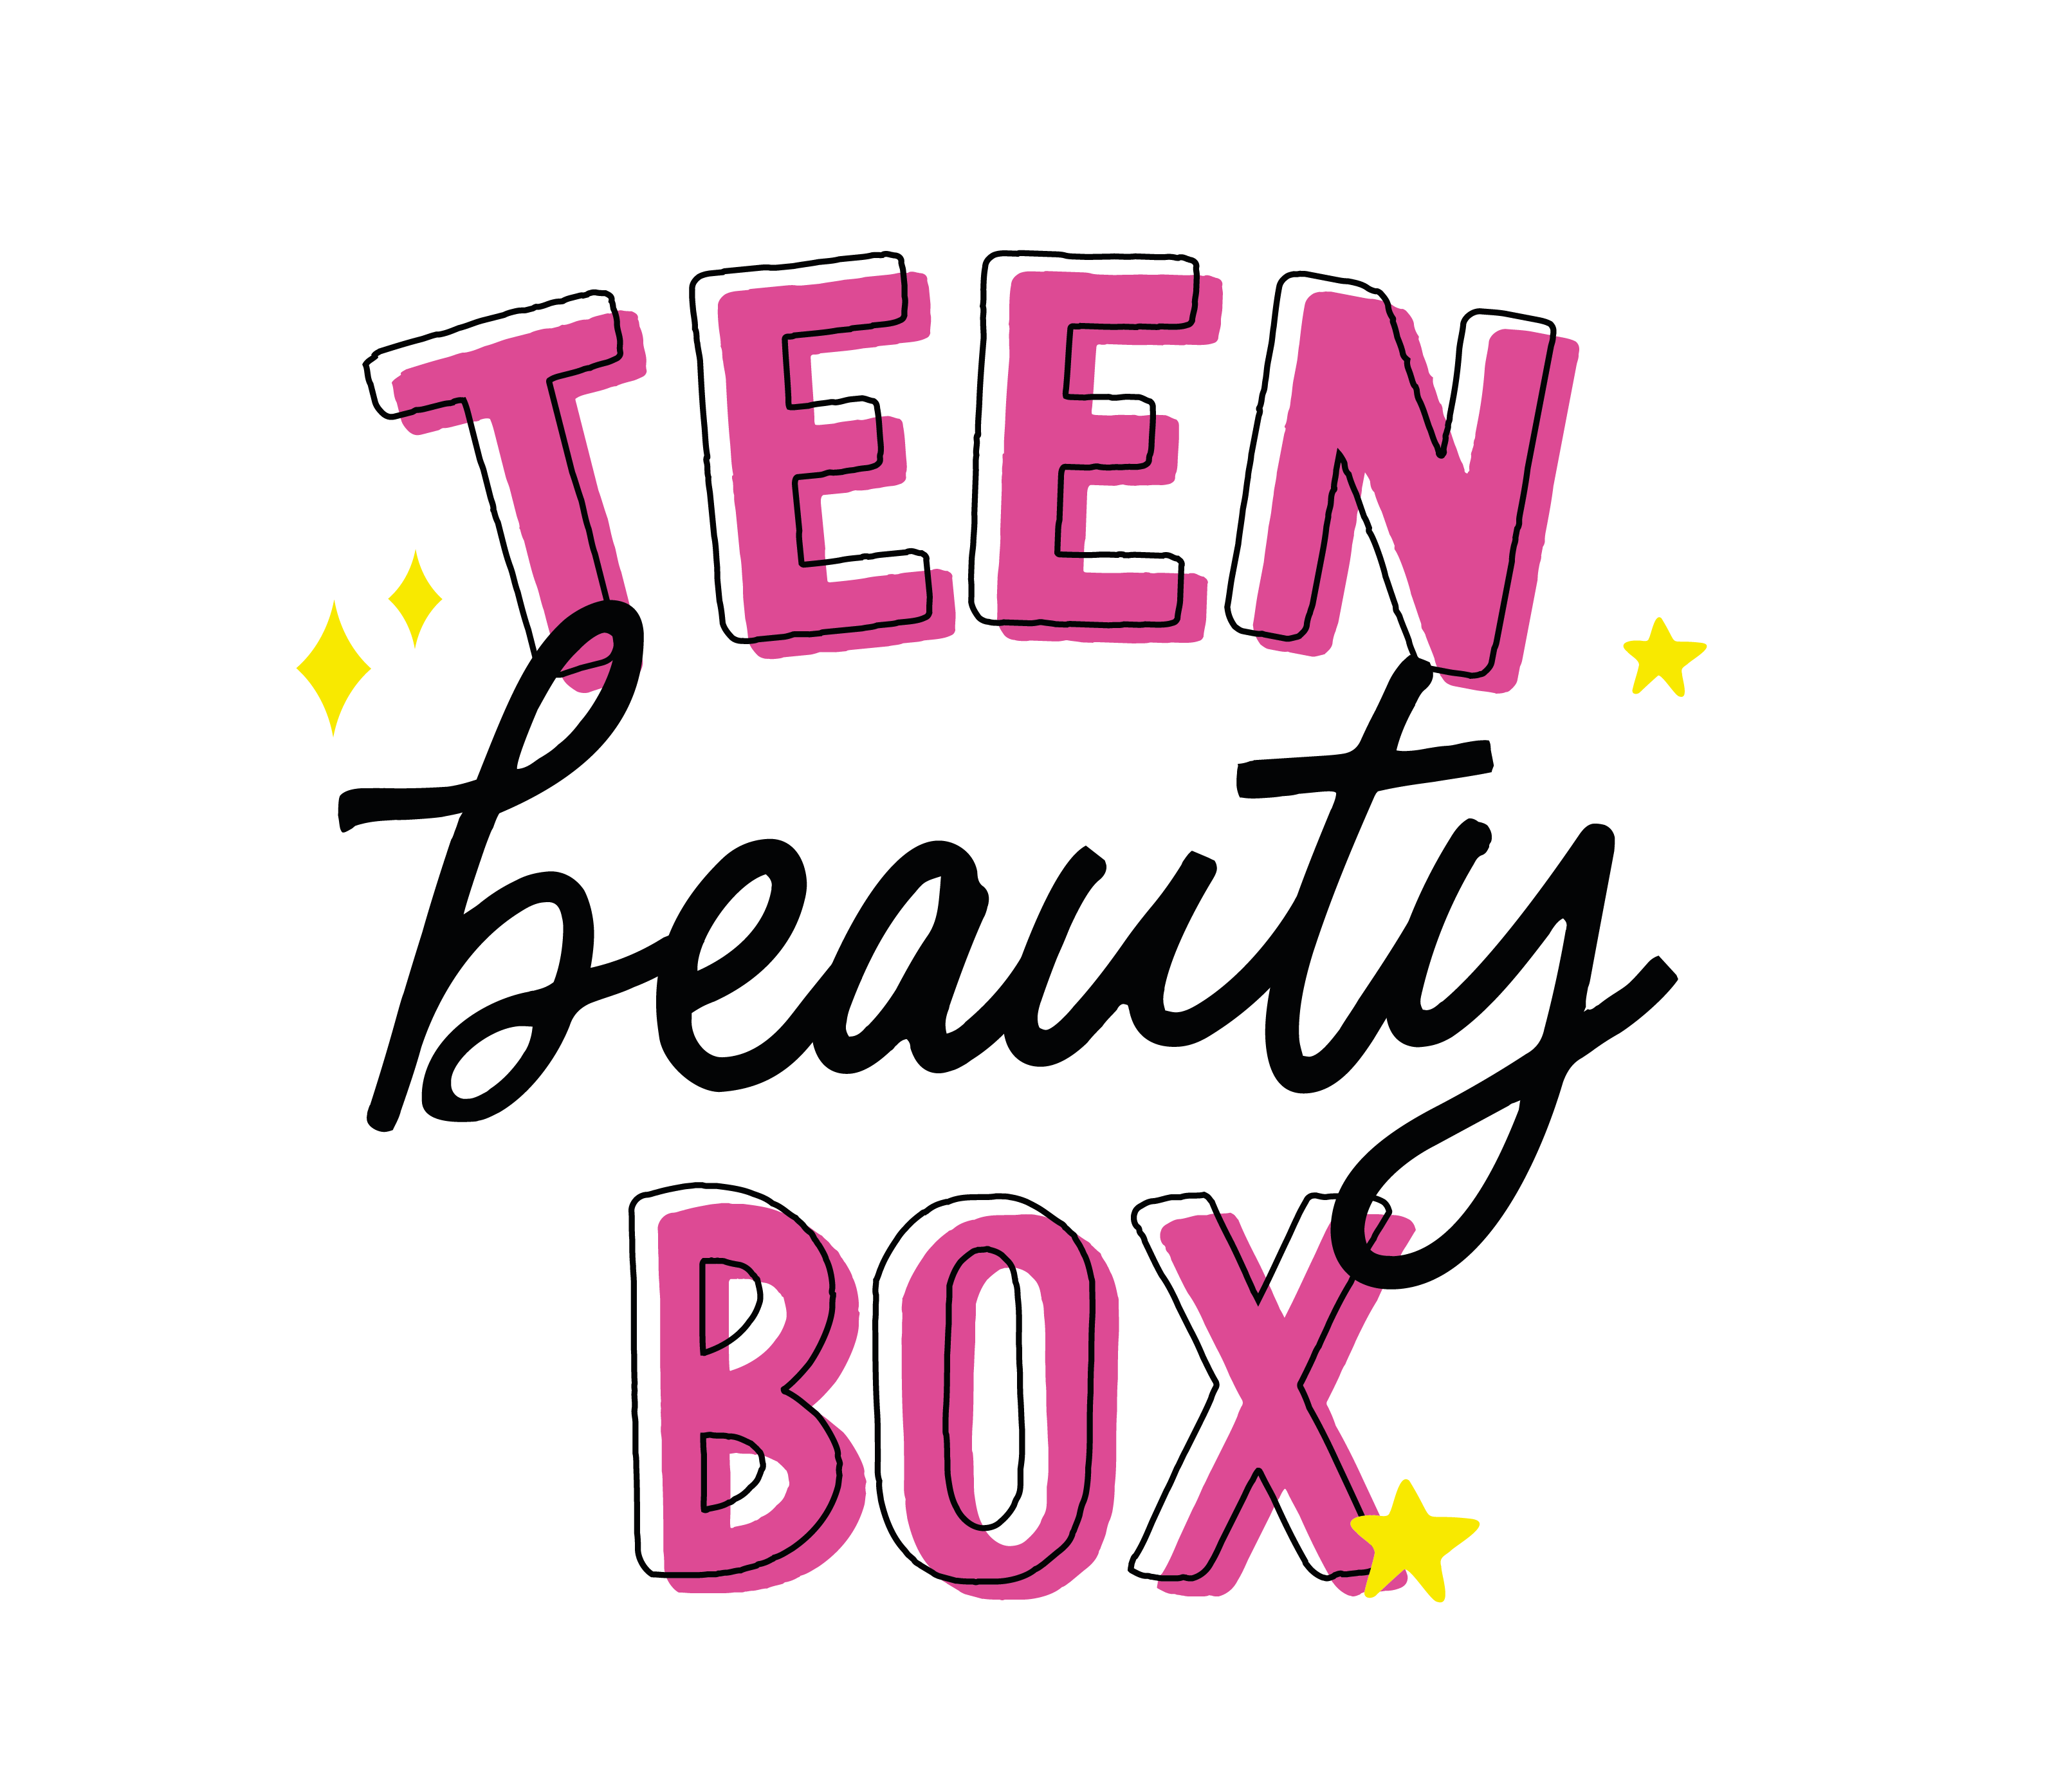 Teenbeautybox.com